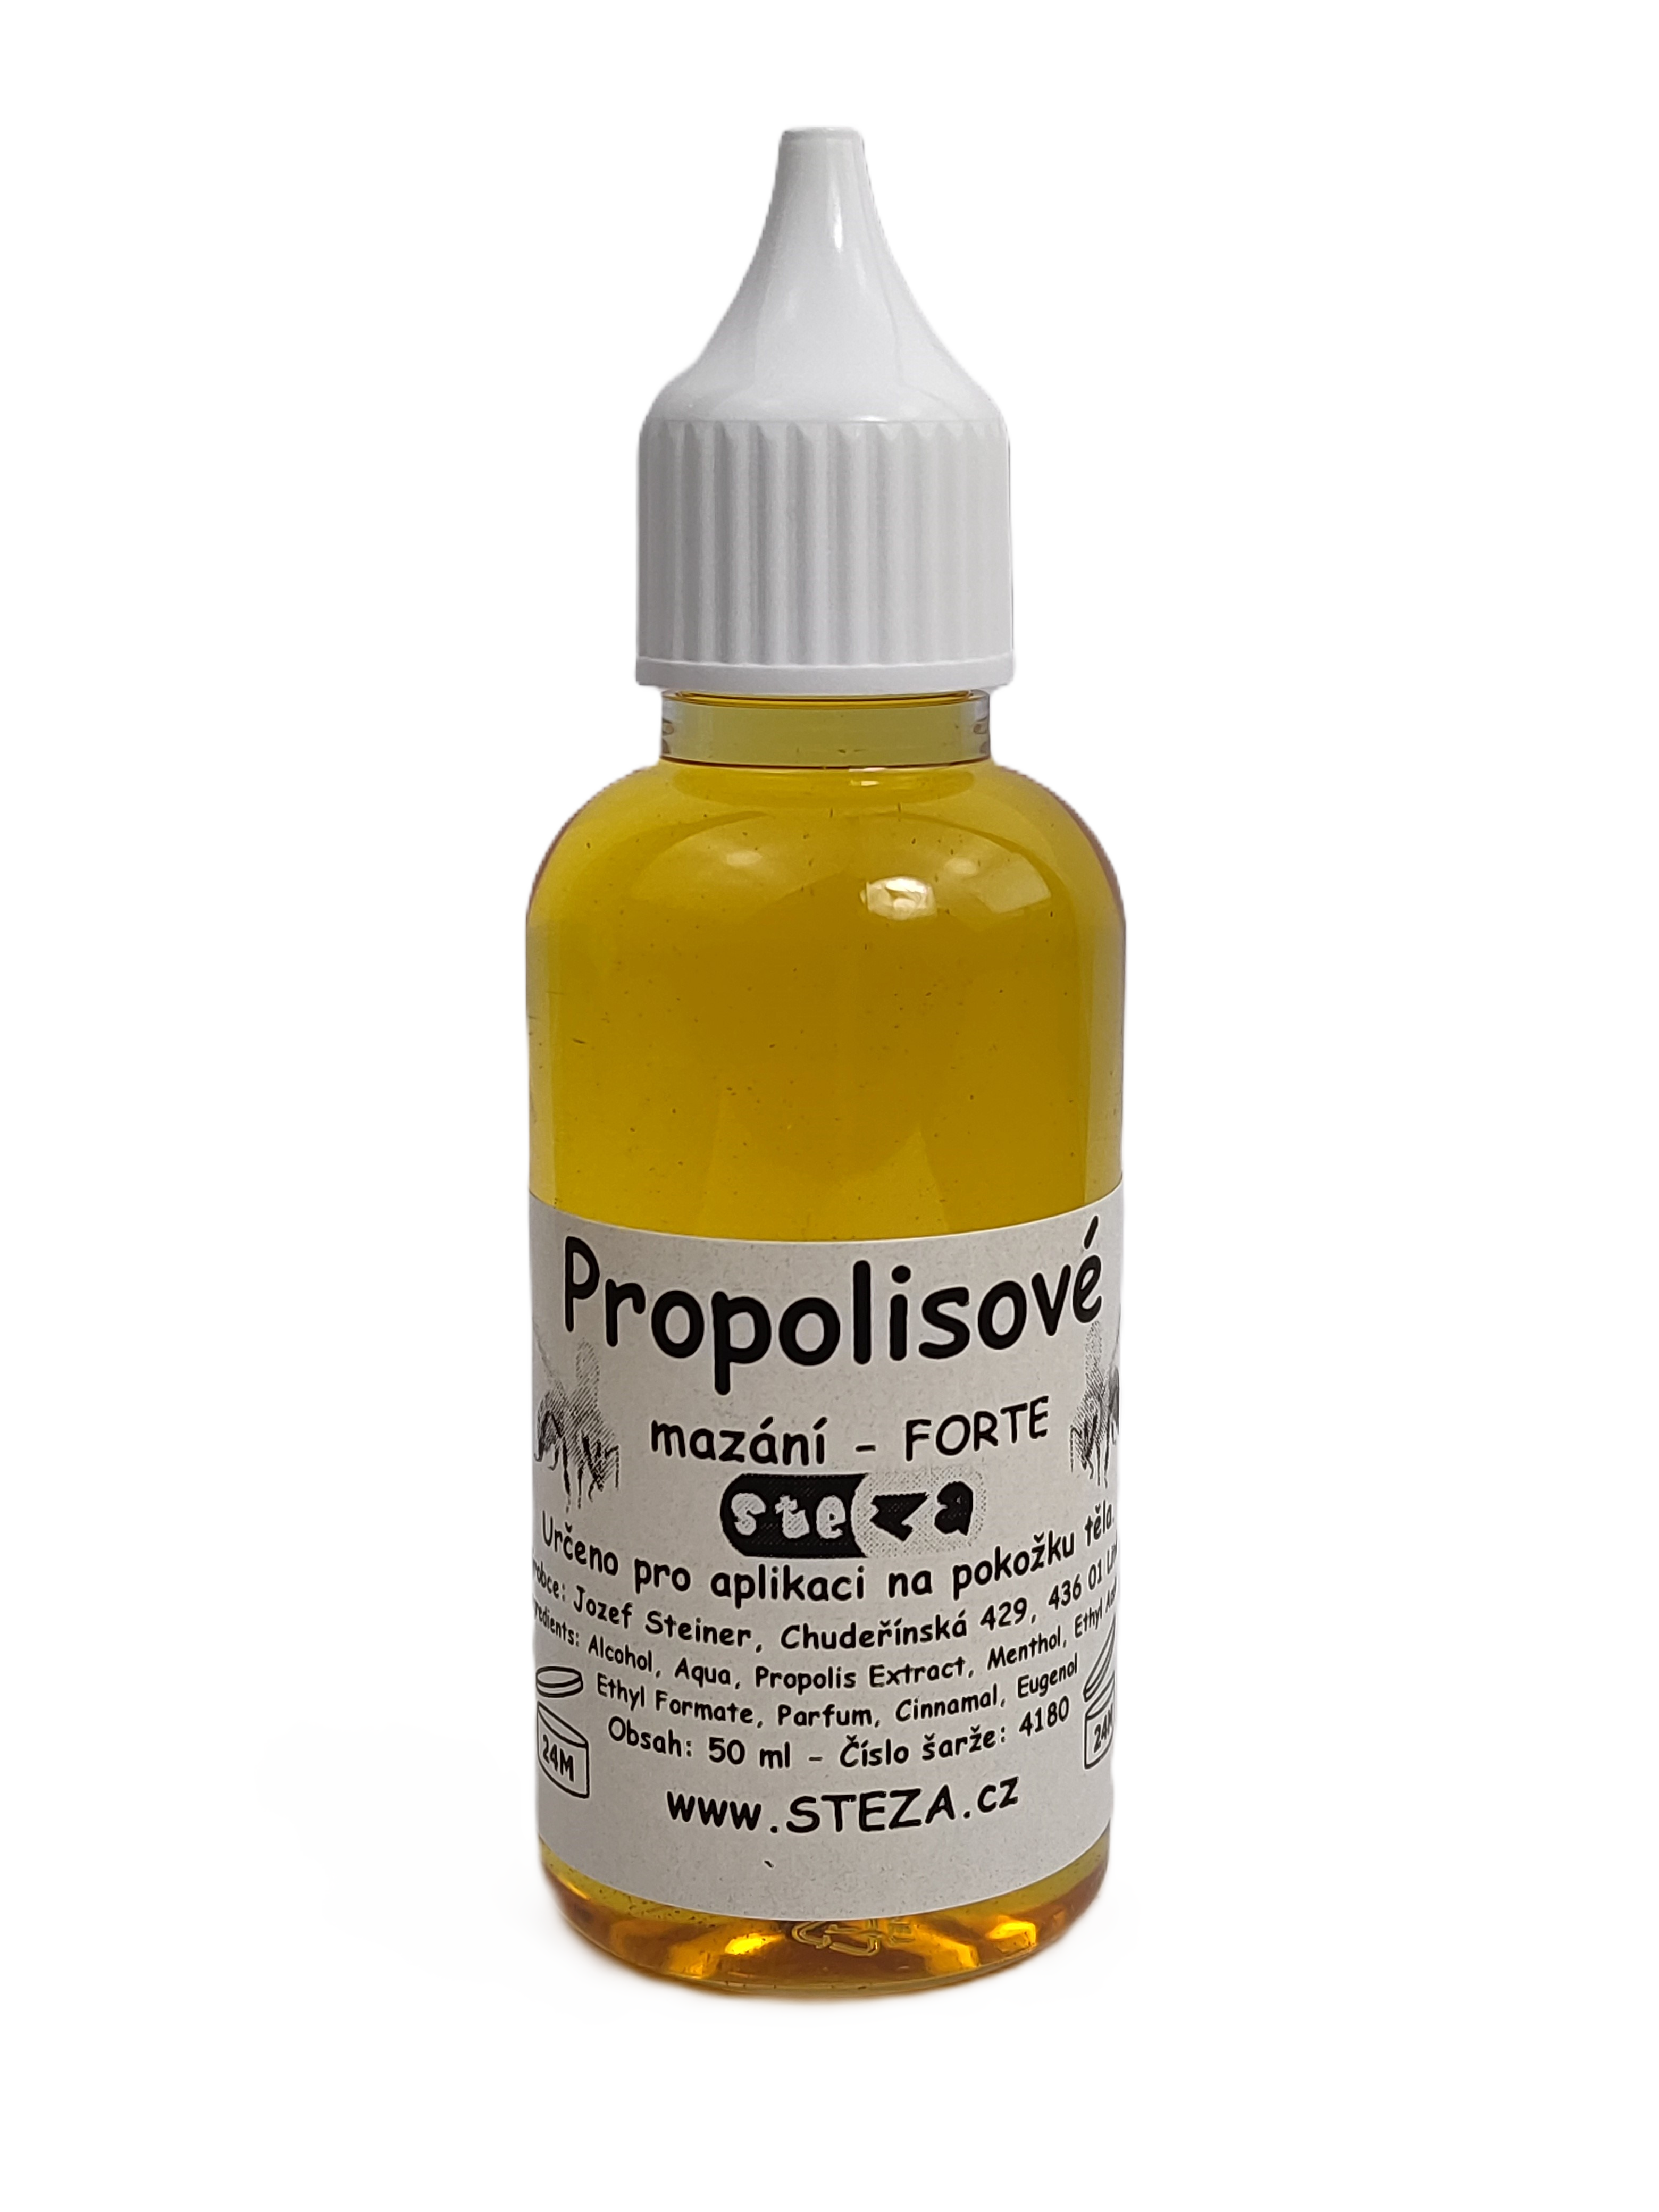 STEZA - Propolisové mazání - FORTE 50 ml. (Propolisové mazání)